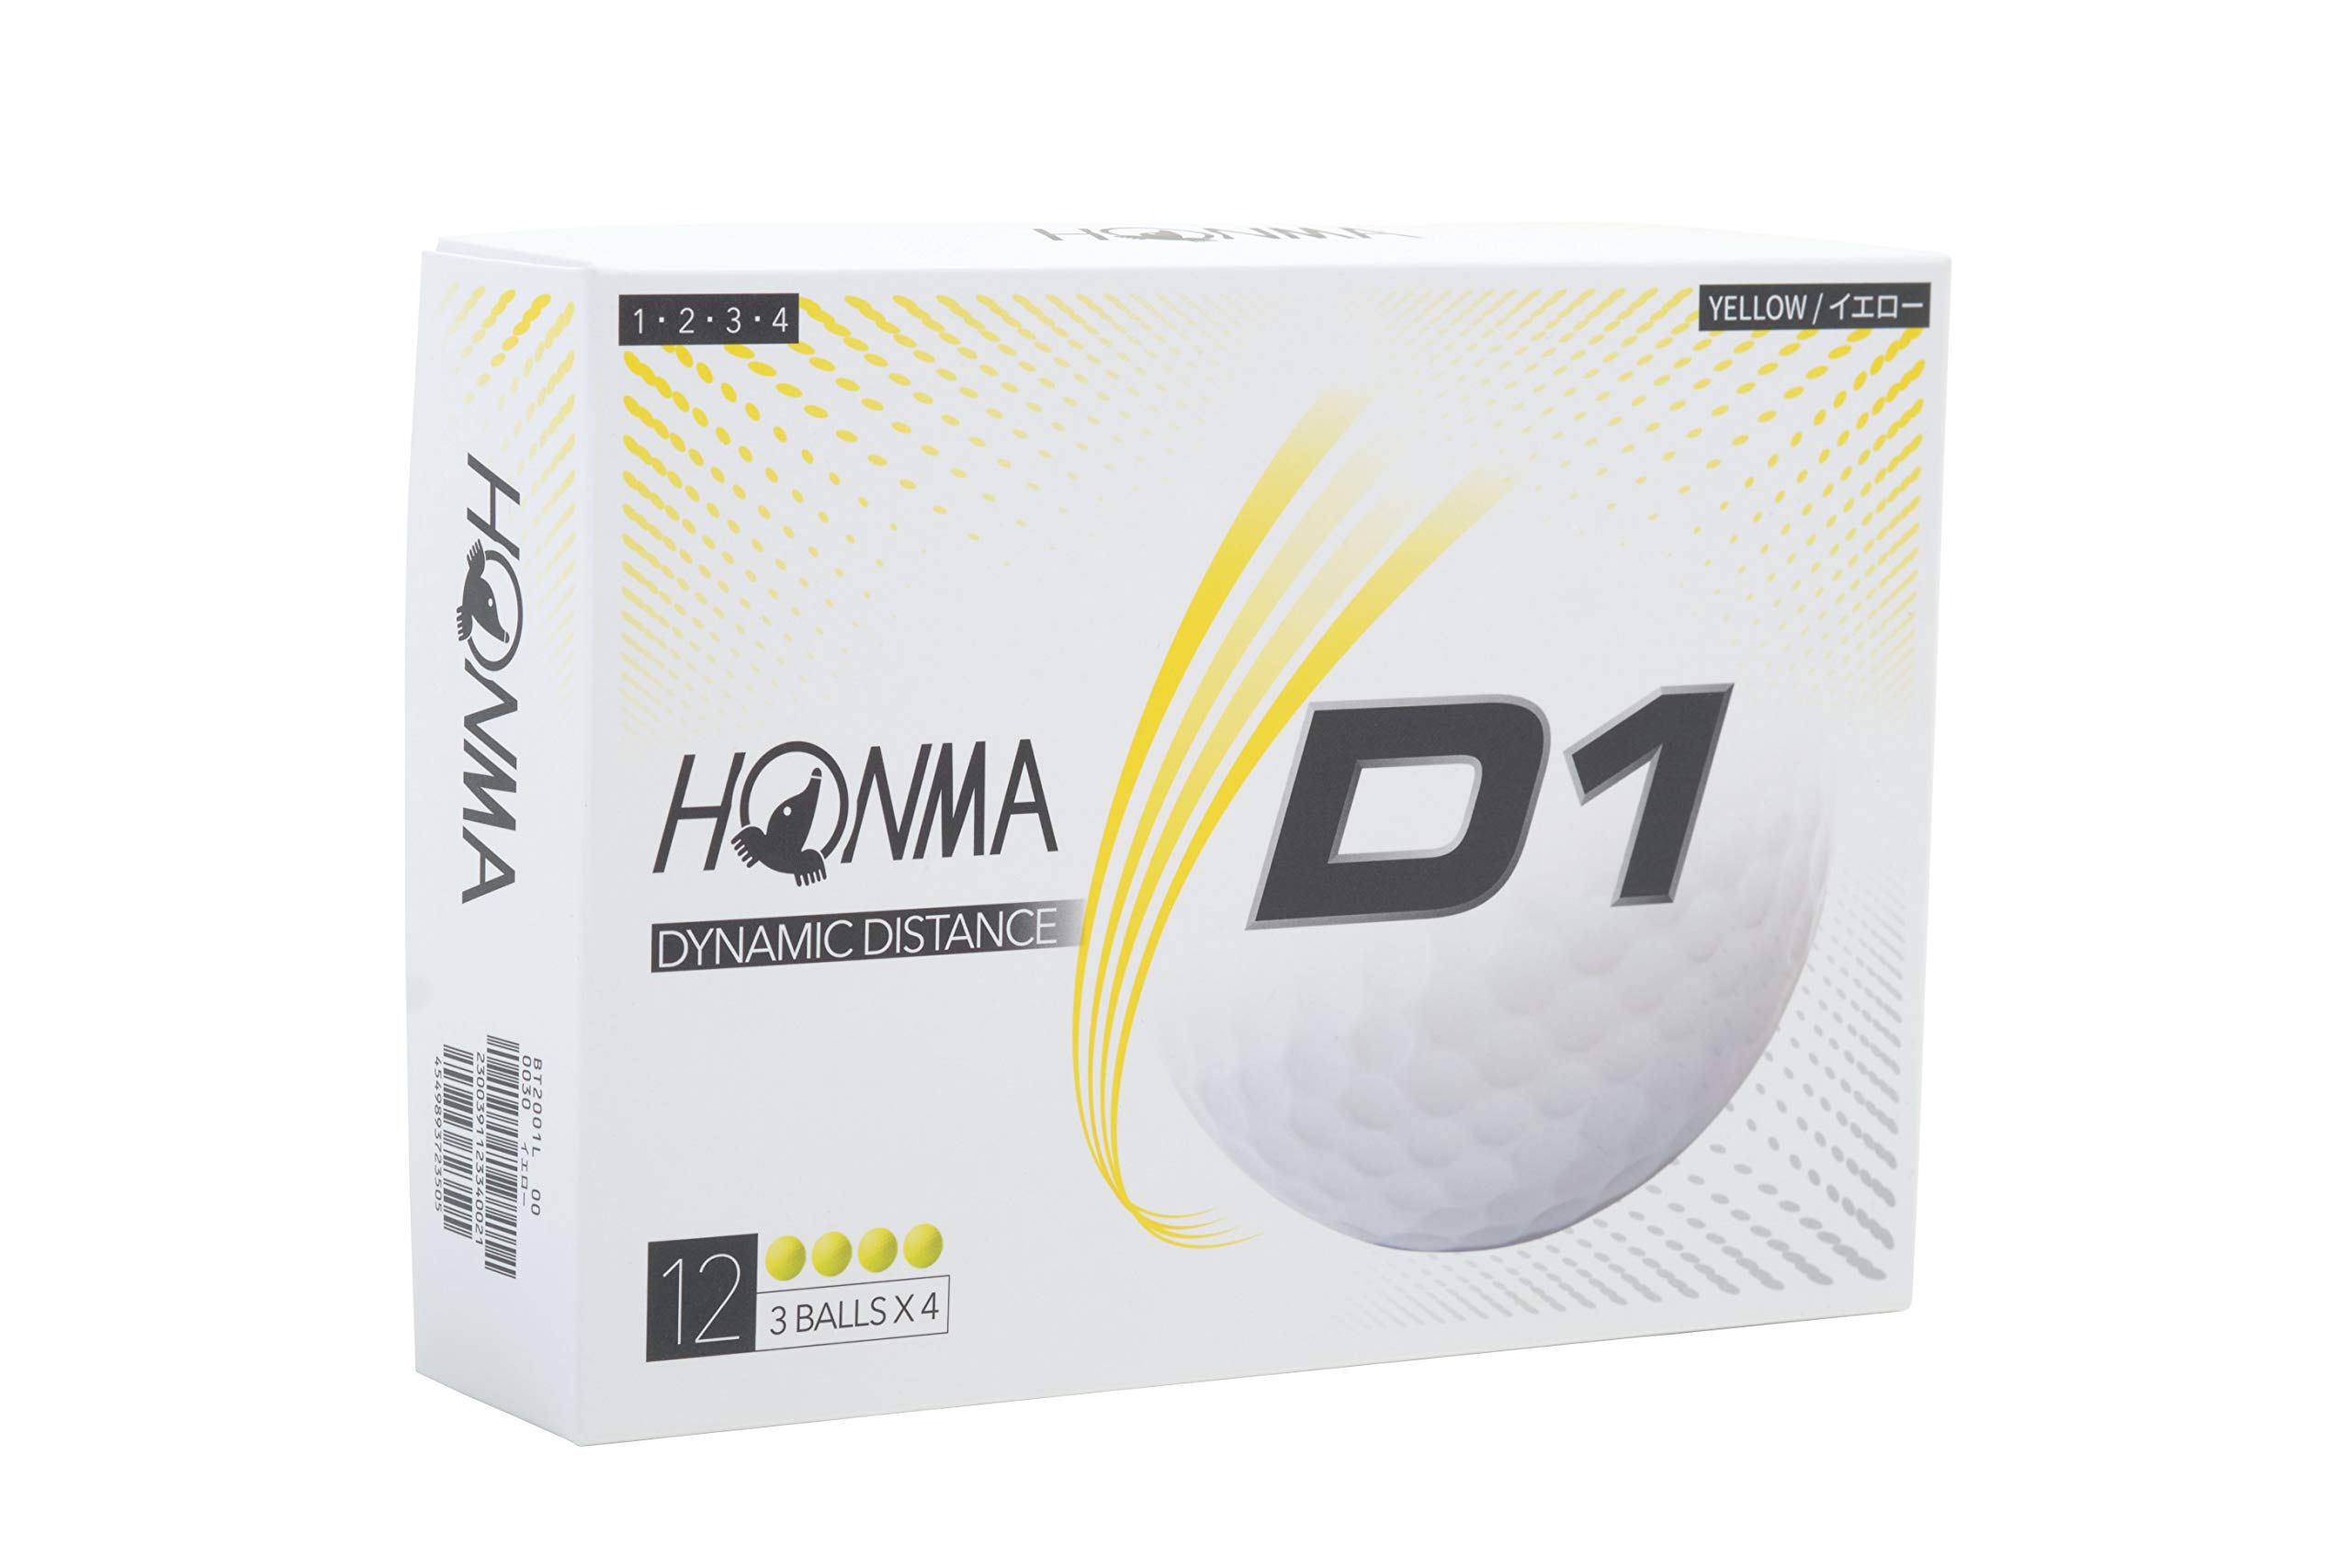 ホンマ ゴルフ ボール D1 2ピース ディスタンス 飛距離 ソフトアイオノマー 1ダース12球入り 368ディンプル 2020 HONMA 本間ゴルフ BT200